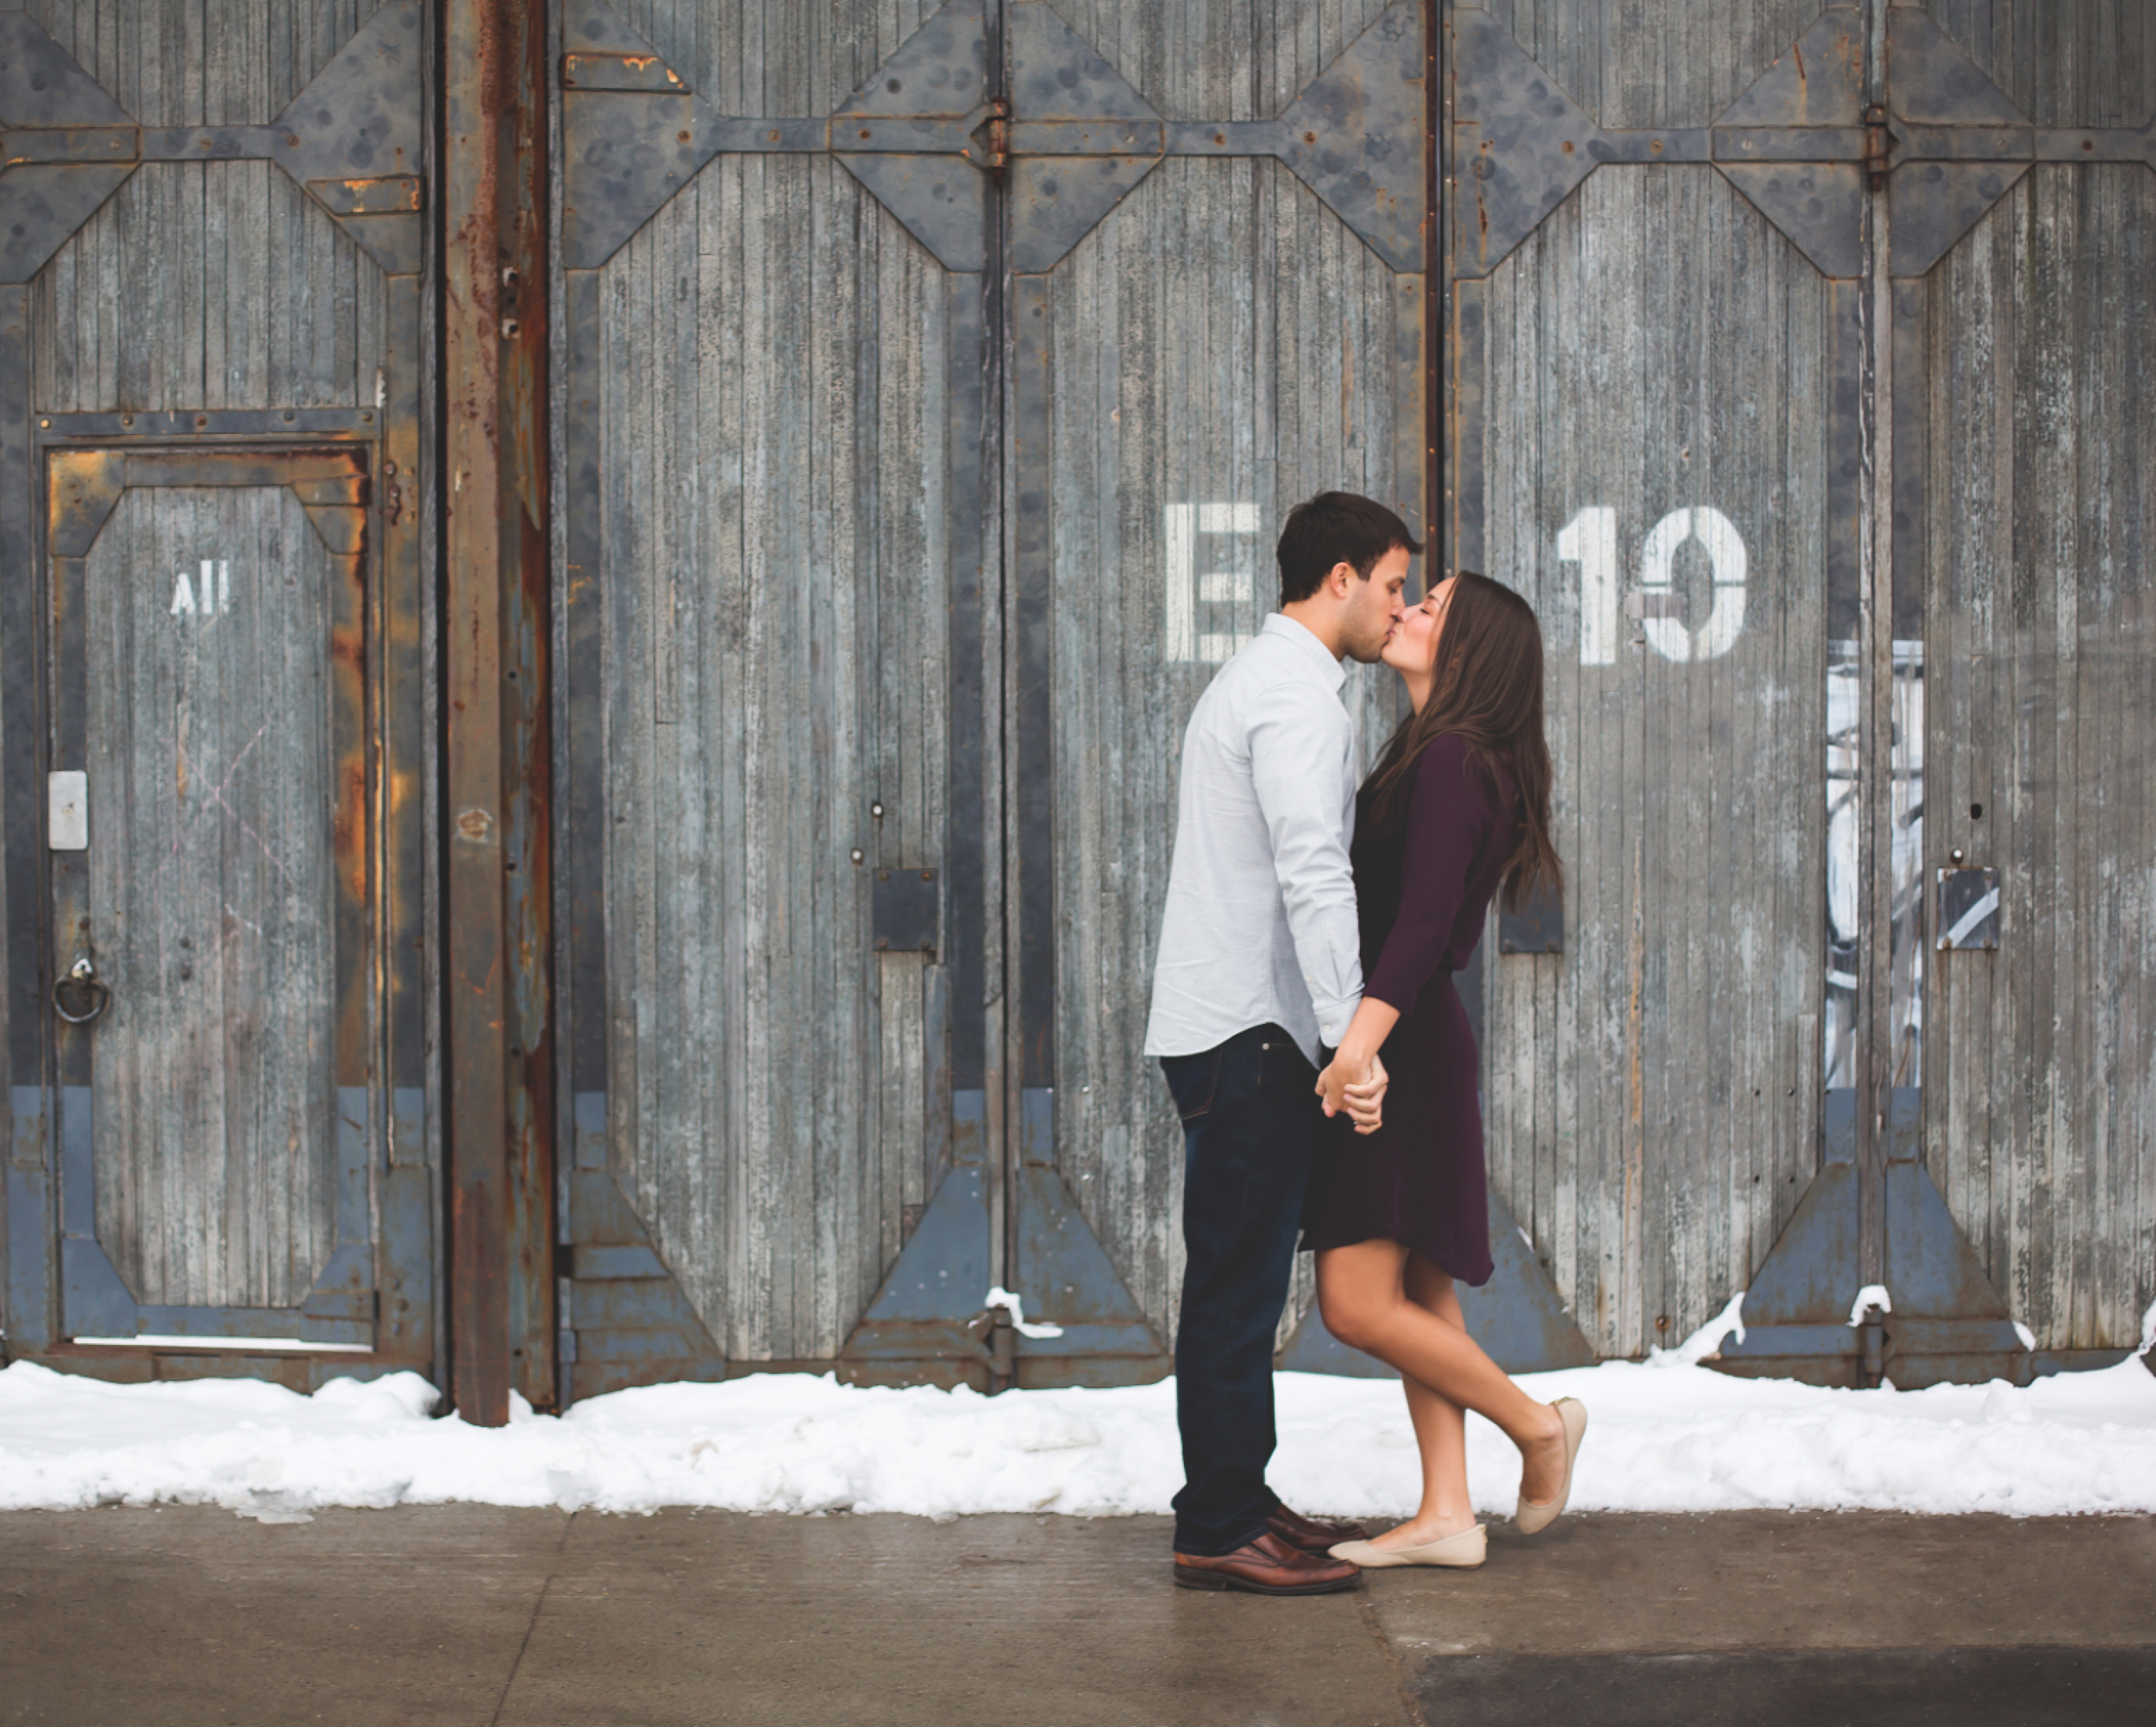 Engagement-Session-Downtown-Toronto-Hamilton-Burlington-Oakville-Niagara-Wedding-Photographer-Engaged-Photography-Artscape-Wynchwood-Barn-Urban-HamOnt-Engaged-Moments-by-Lauren-Photo-Image-15.png